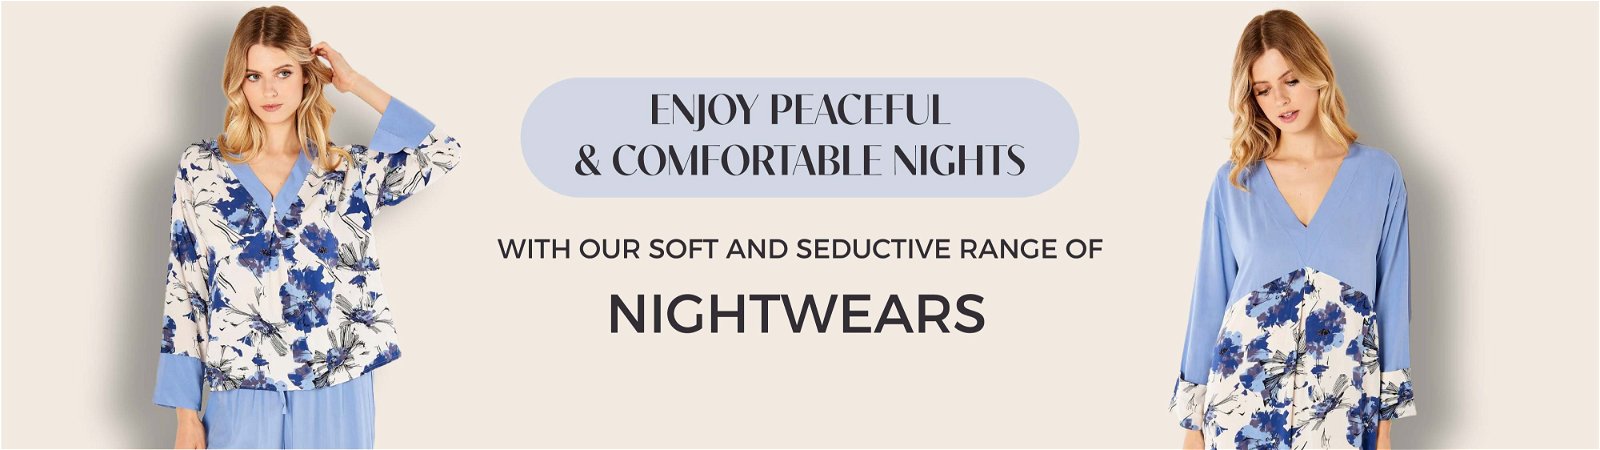 Nightwear category image